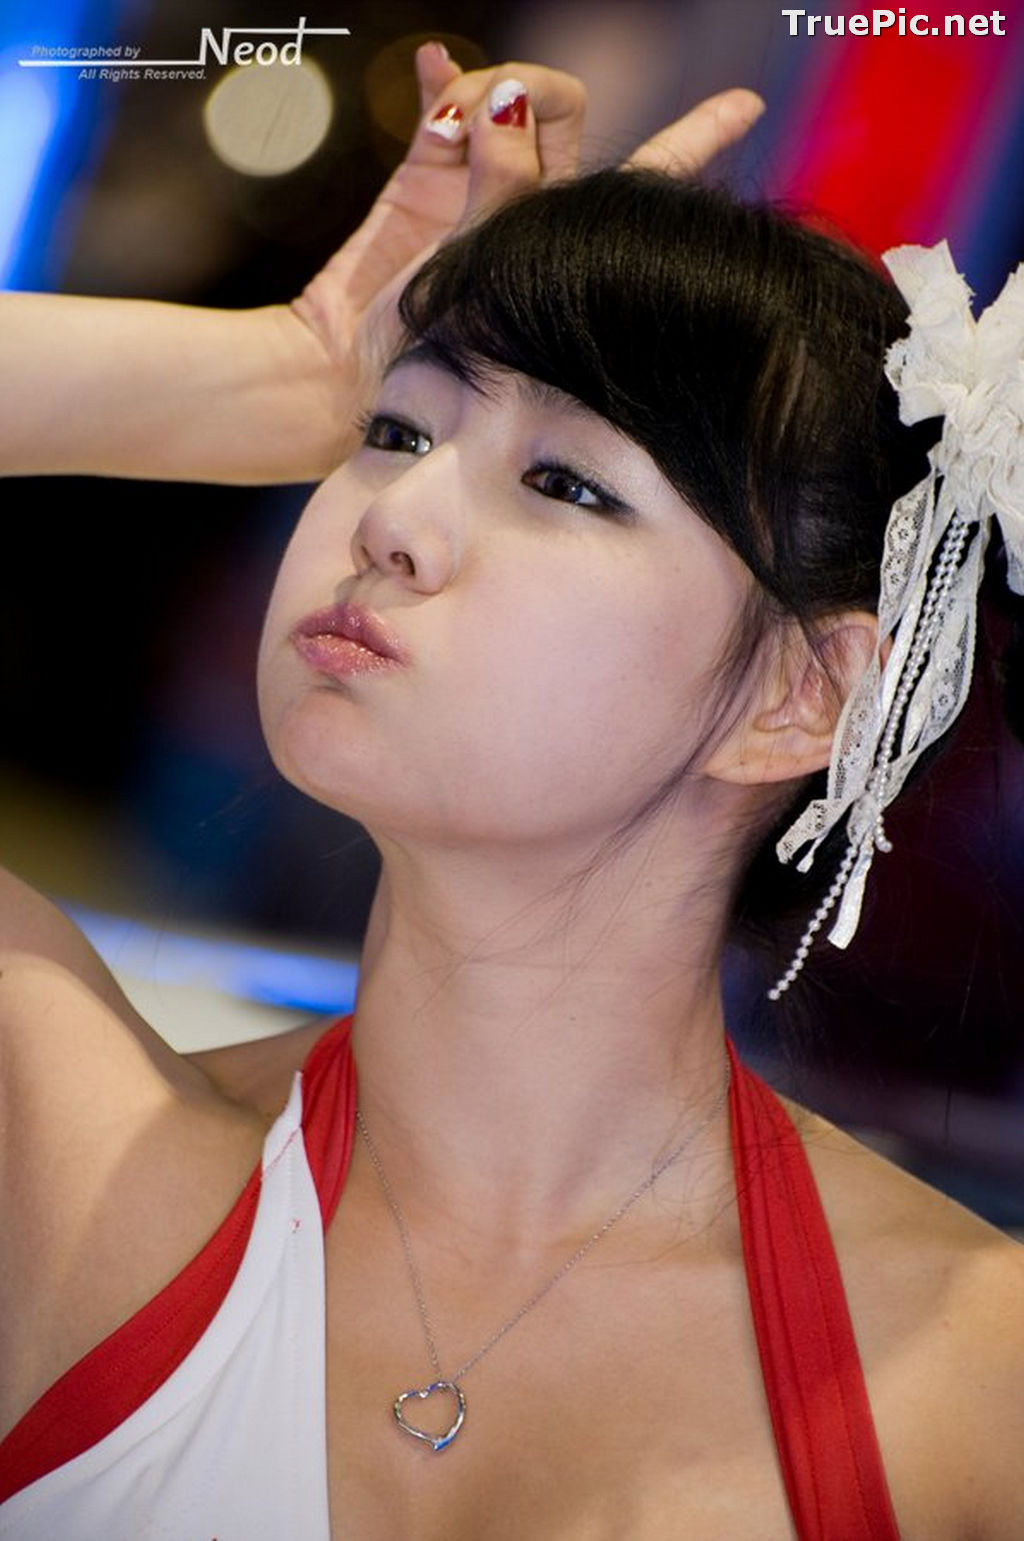 Image Best Beautiful Images Of Korean Racing Queen Han Ga Eun #4 - TruePic.net - Picture-47